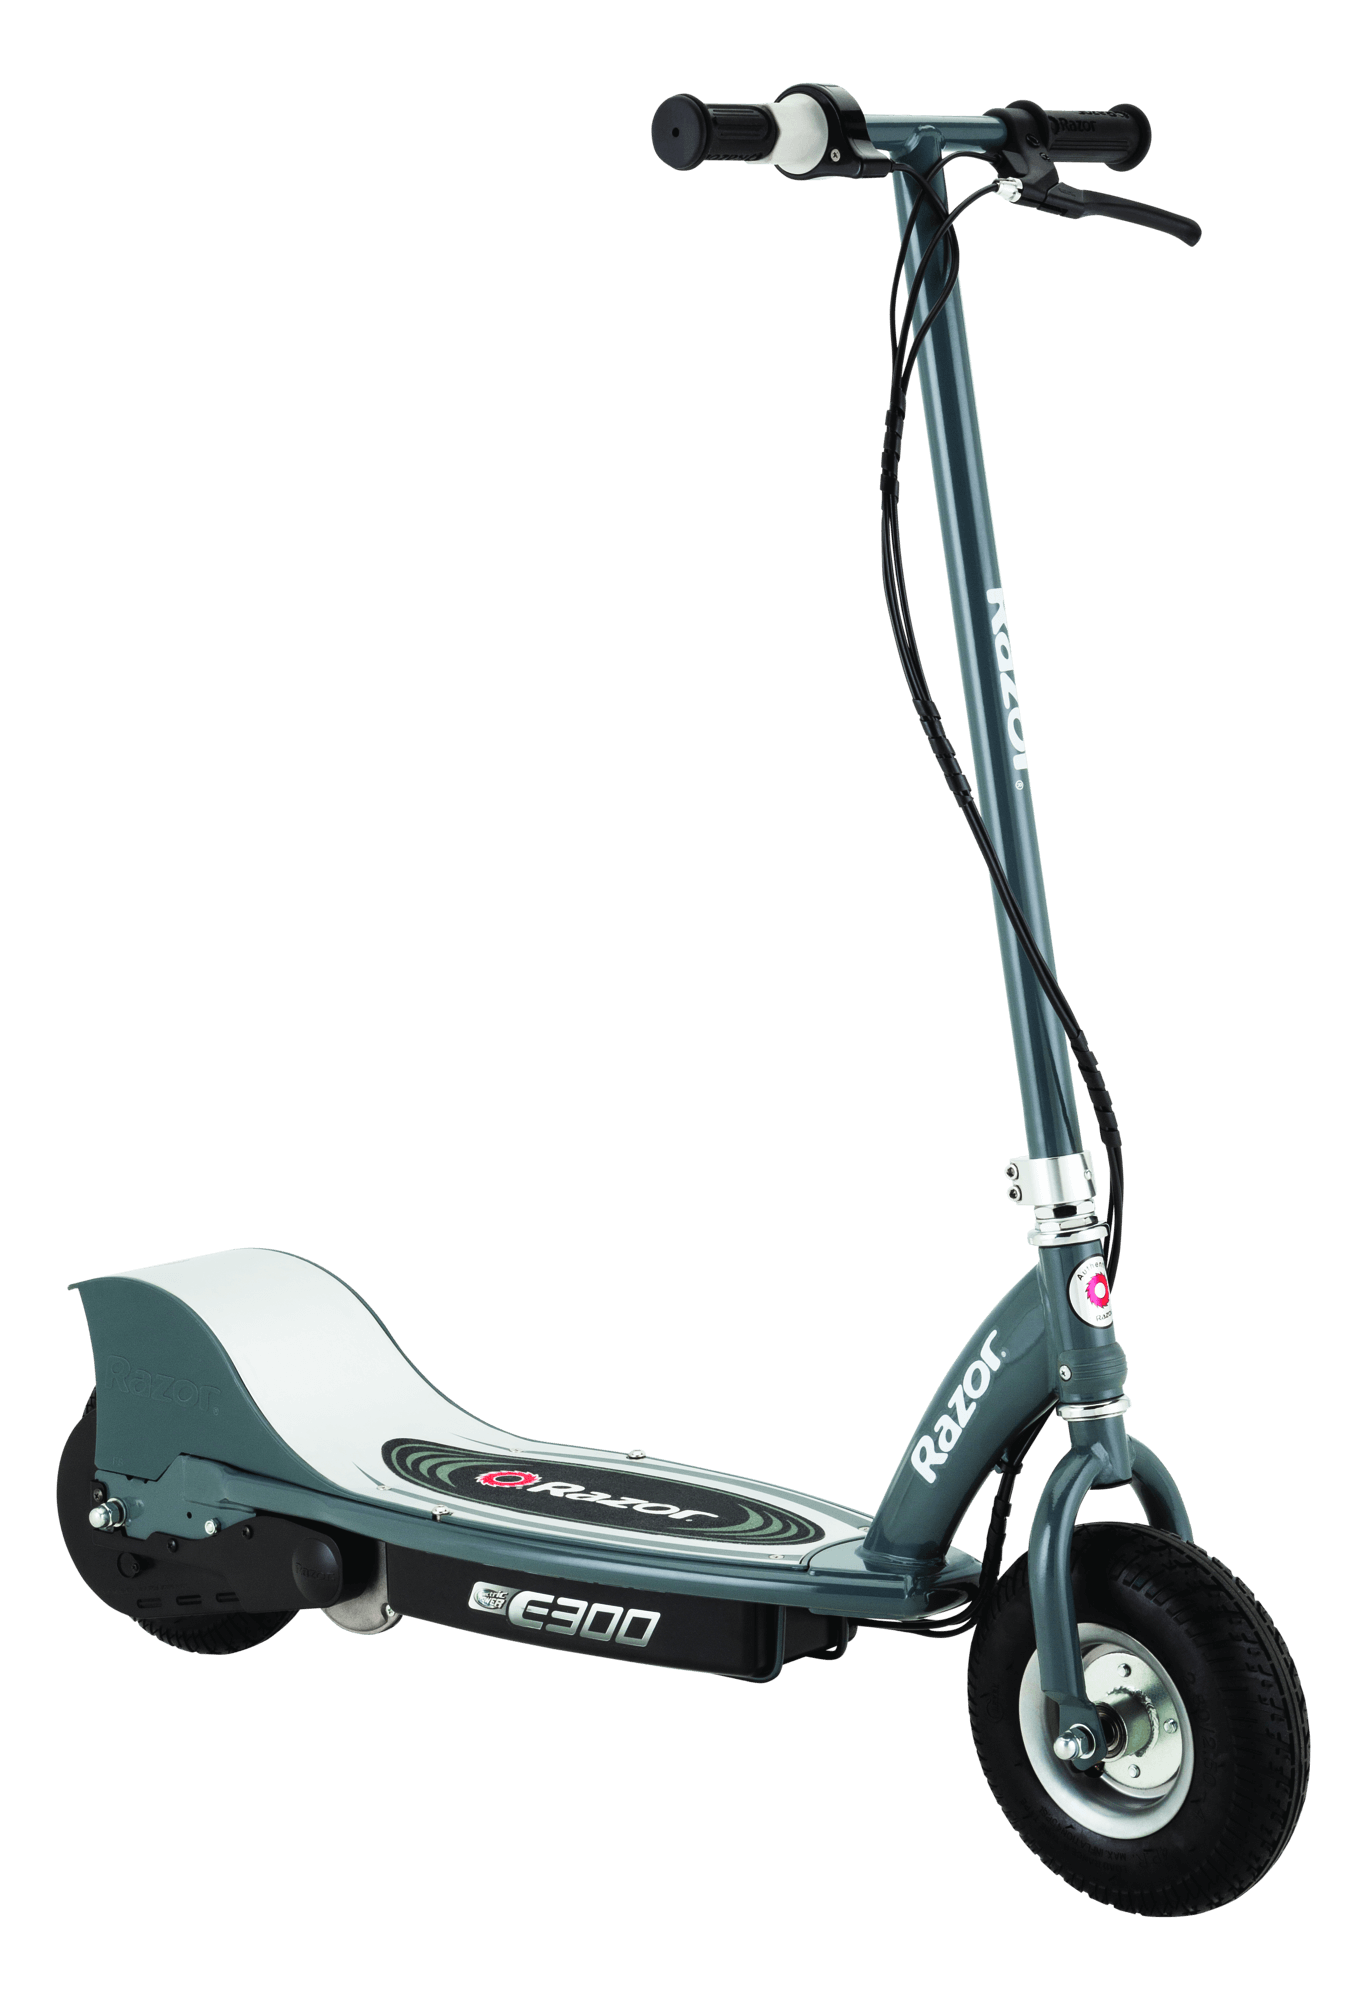 E300 Electric Scooter Razor